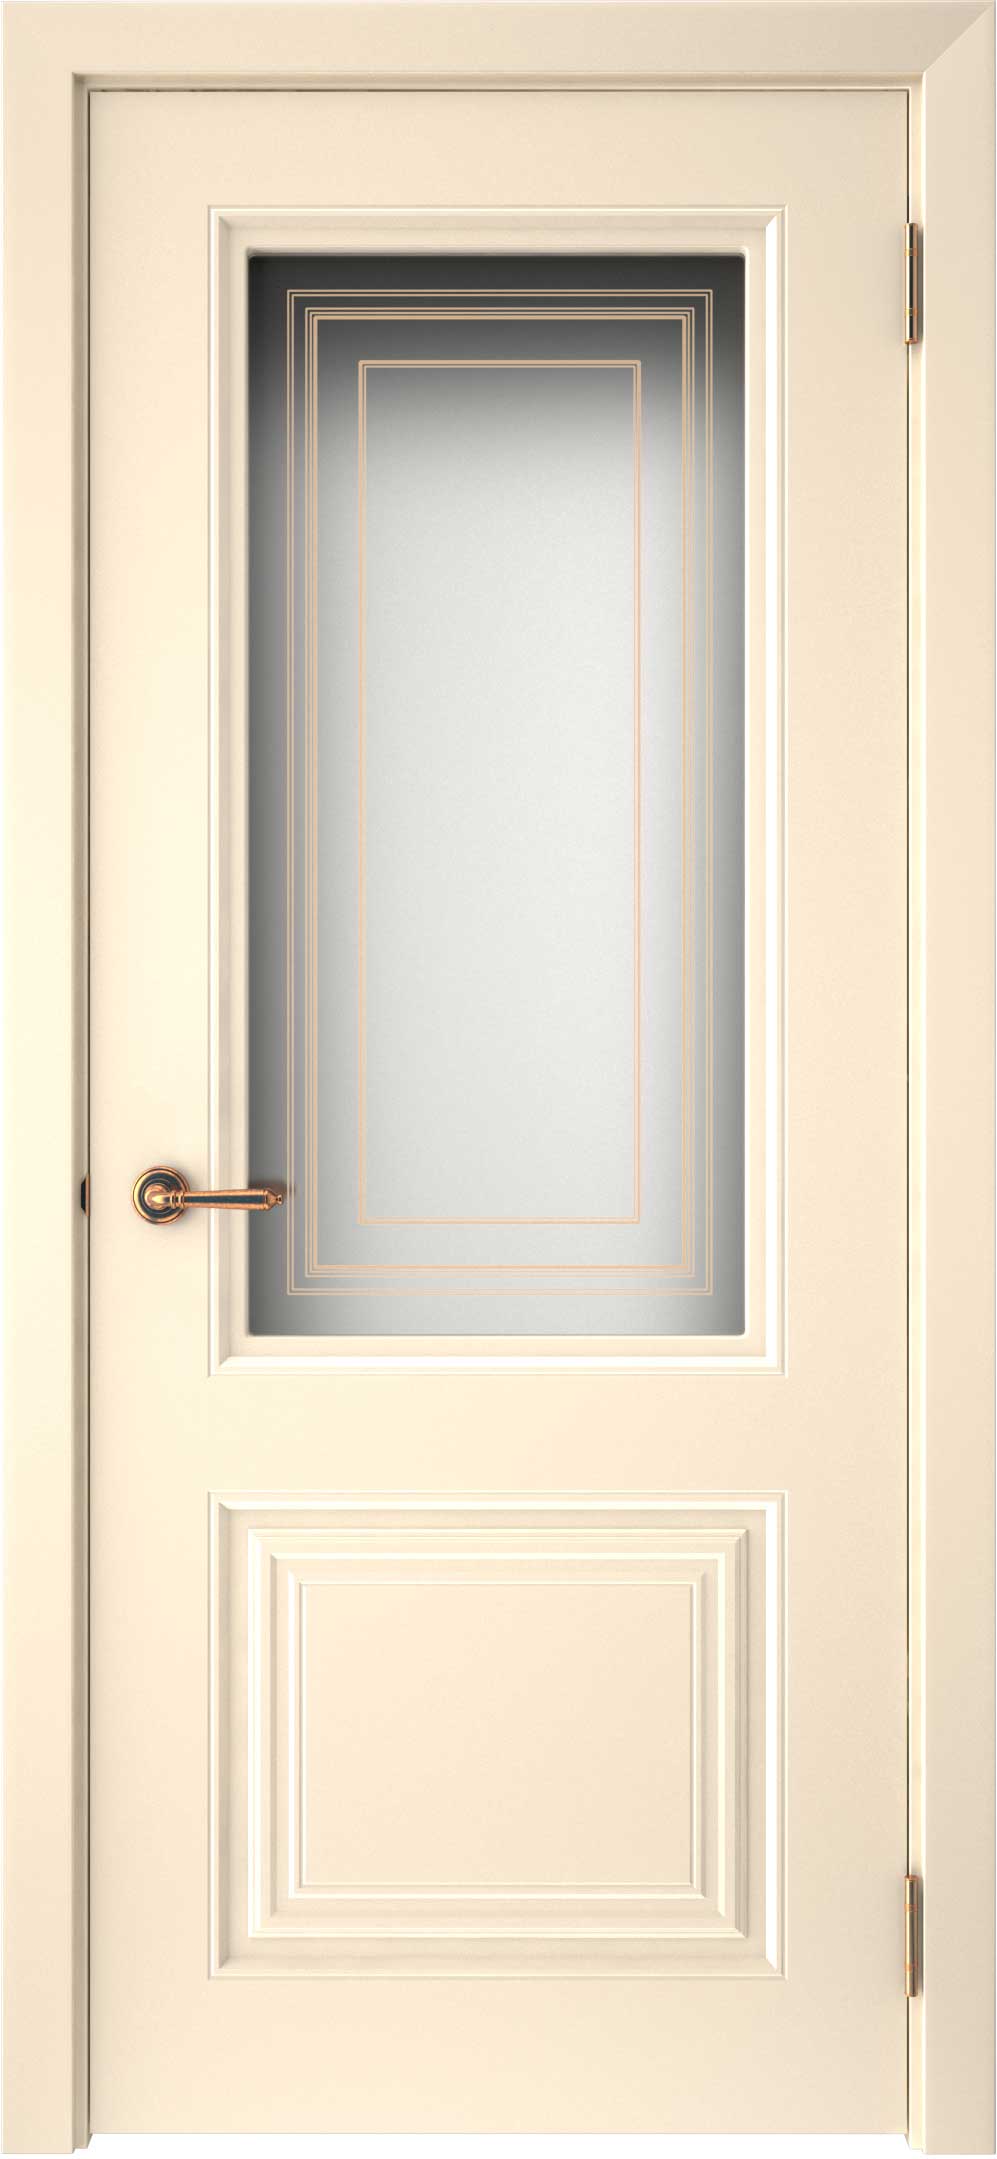 Двери крашеные (Эмаль) ТЕКОНА Смальта-42 со стеклом Ваниль ral размер 200 х 90 см. артикул F0000093301